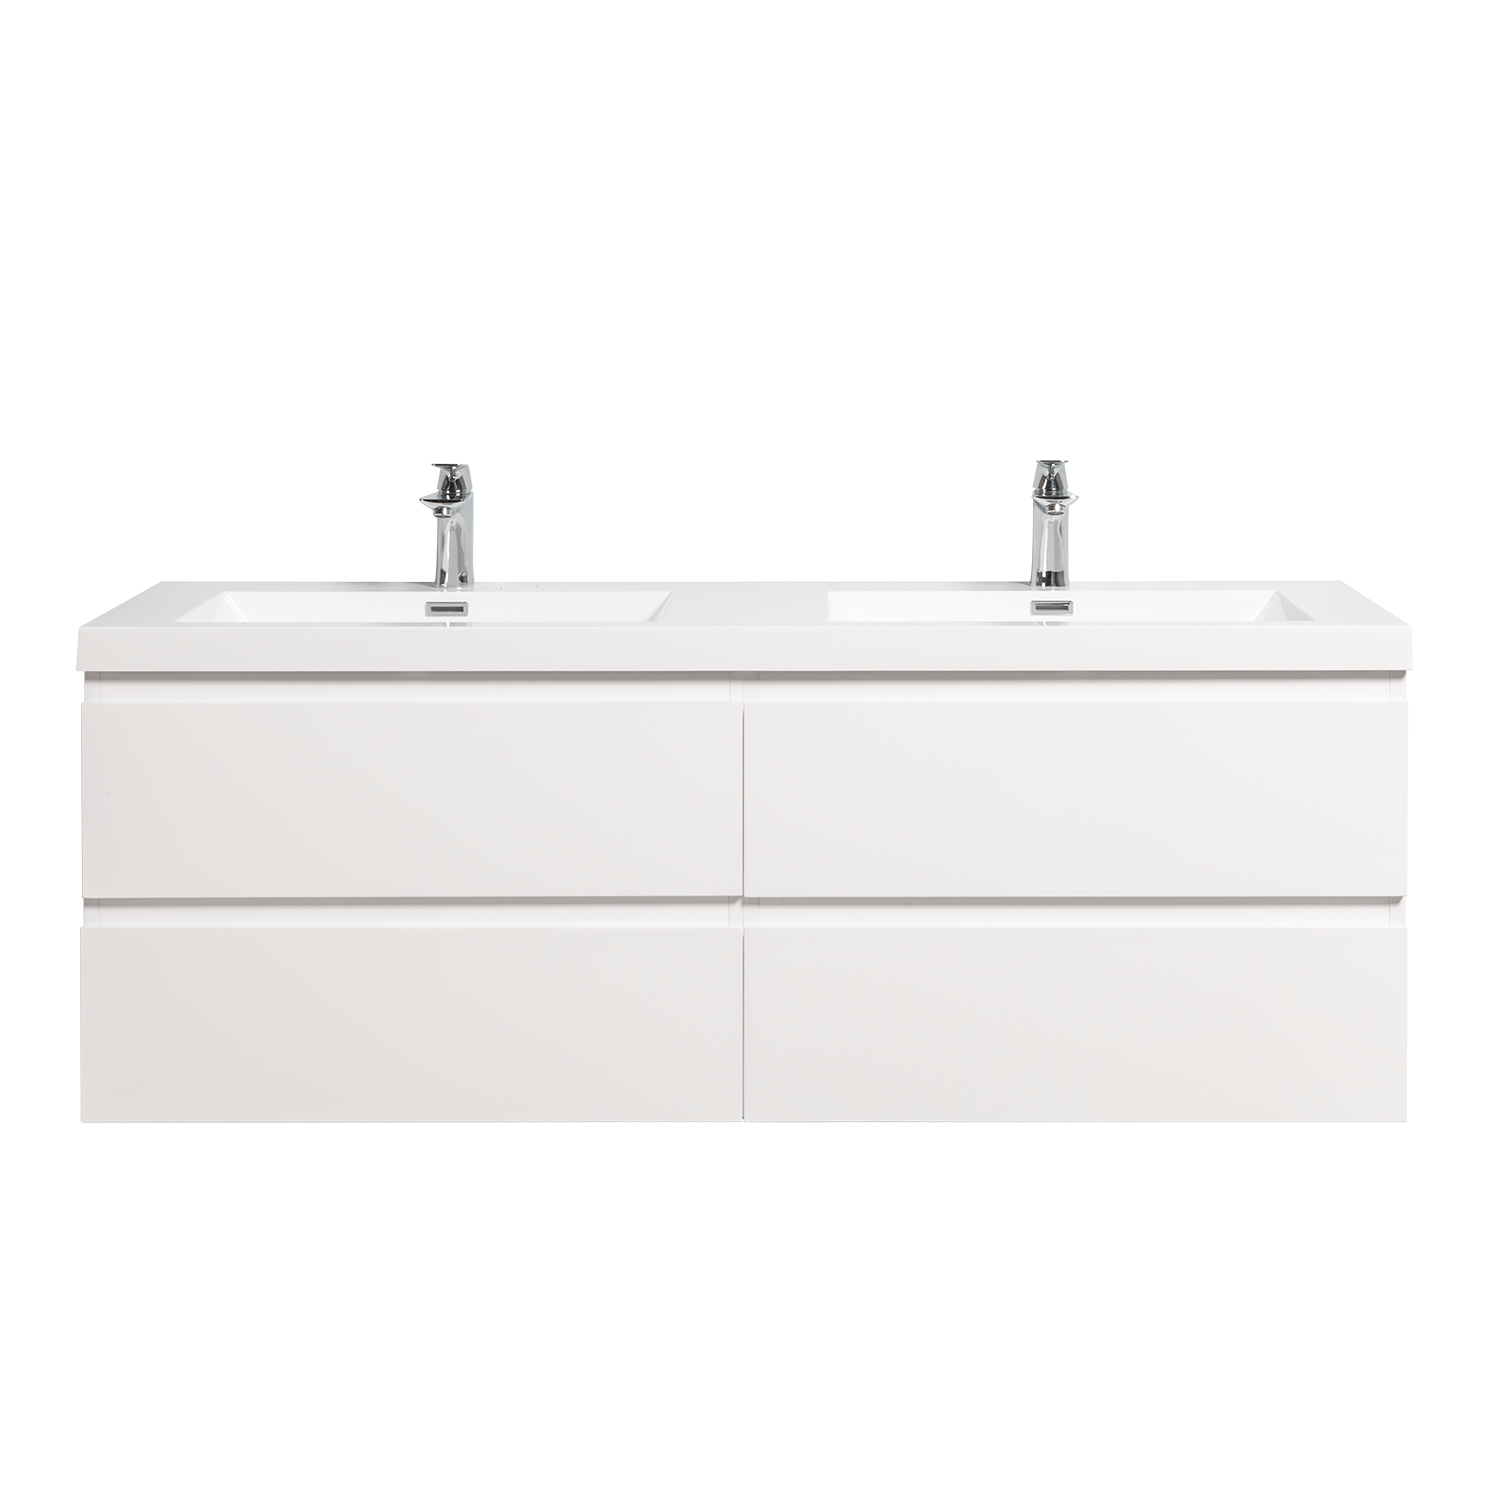 Duko Angela 60D-1 Rectangular Sink Bathroom Vanity Cabinet 